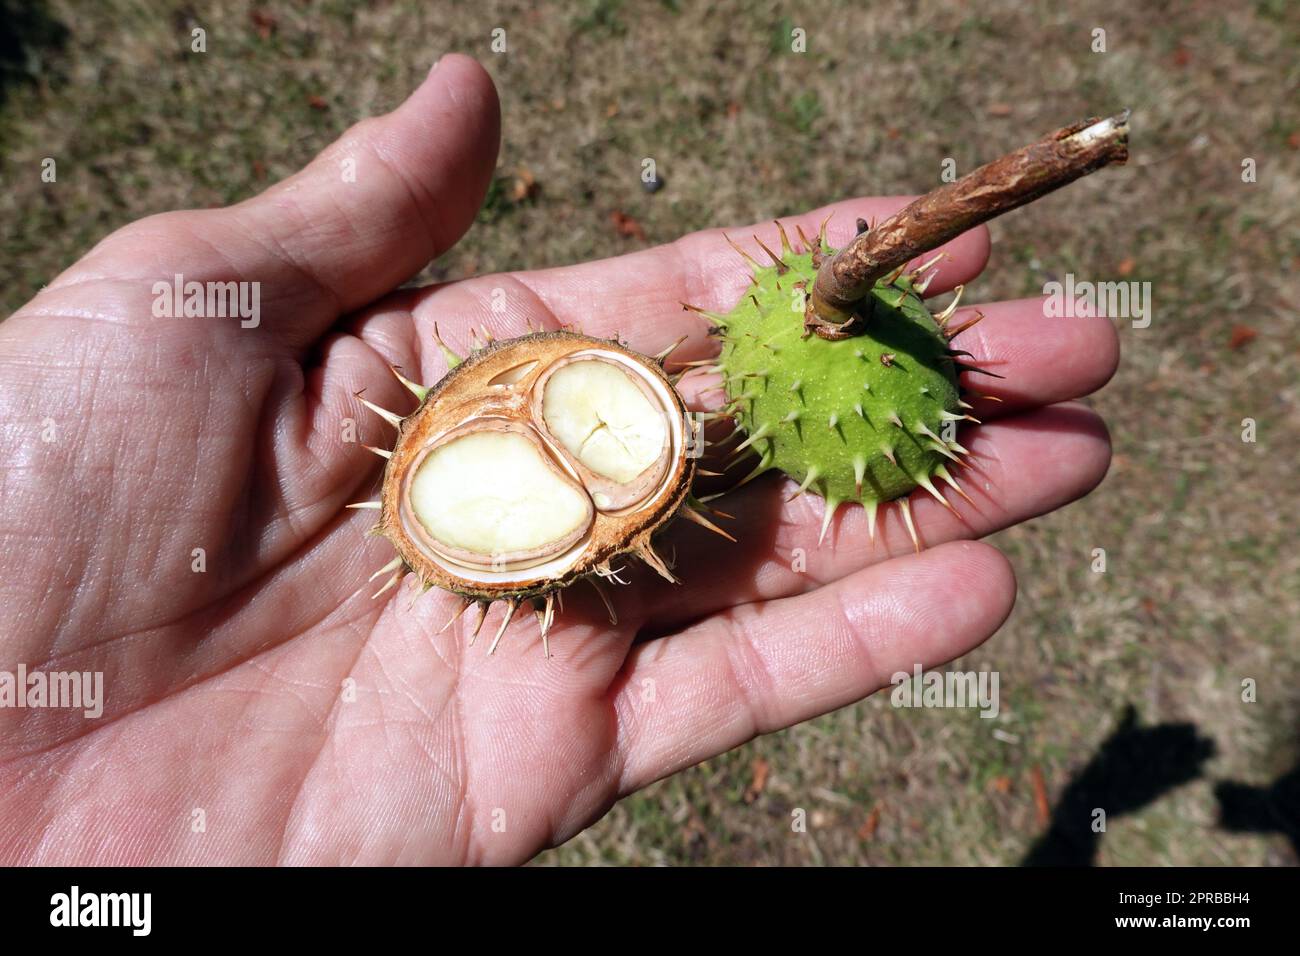 Kastanie (Aesculus hippocastanum) mit einer Zwillsfrucht auf einer Handfläche Banque D'Images